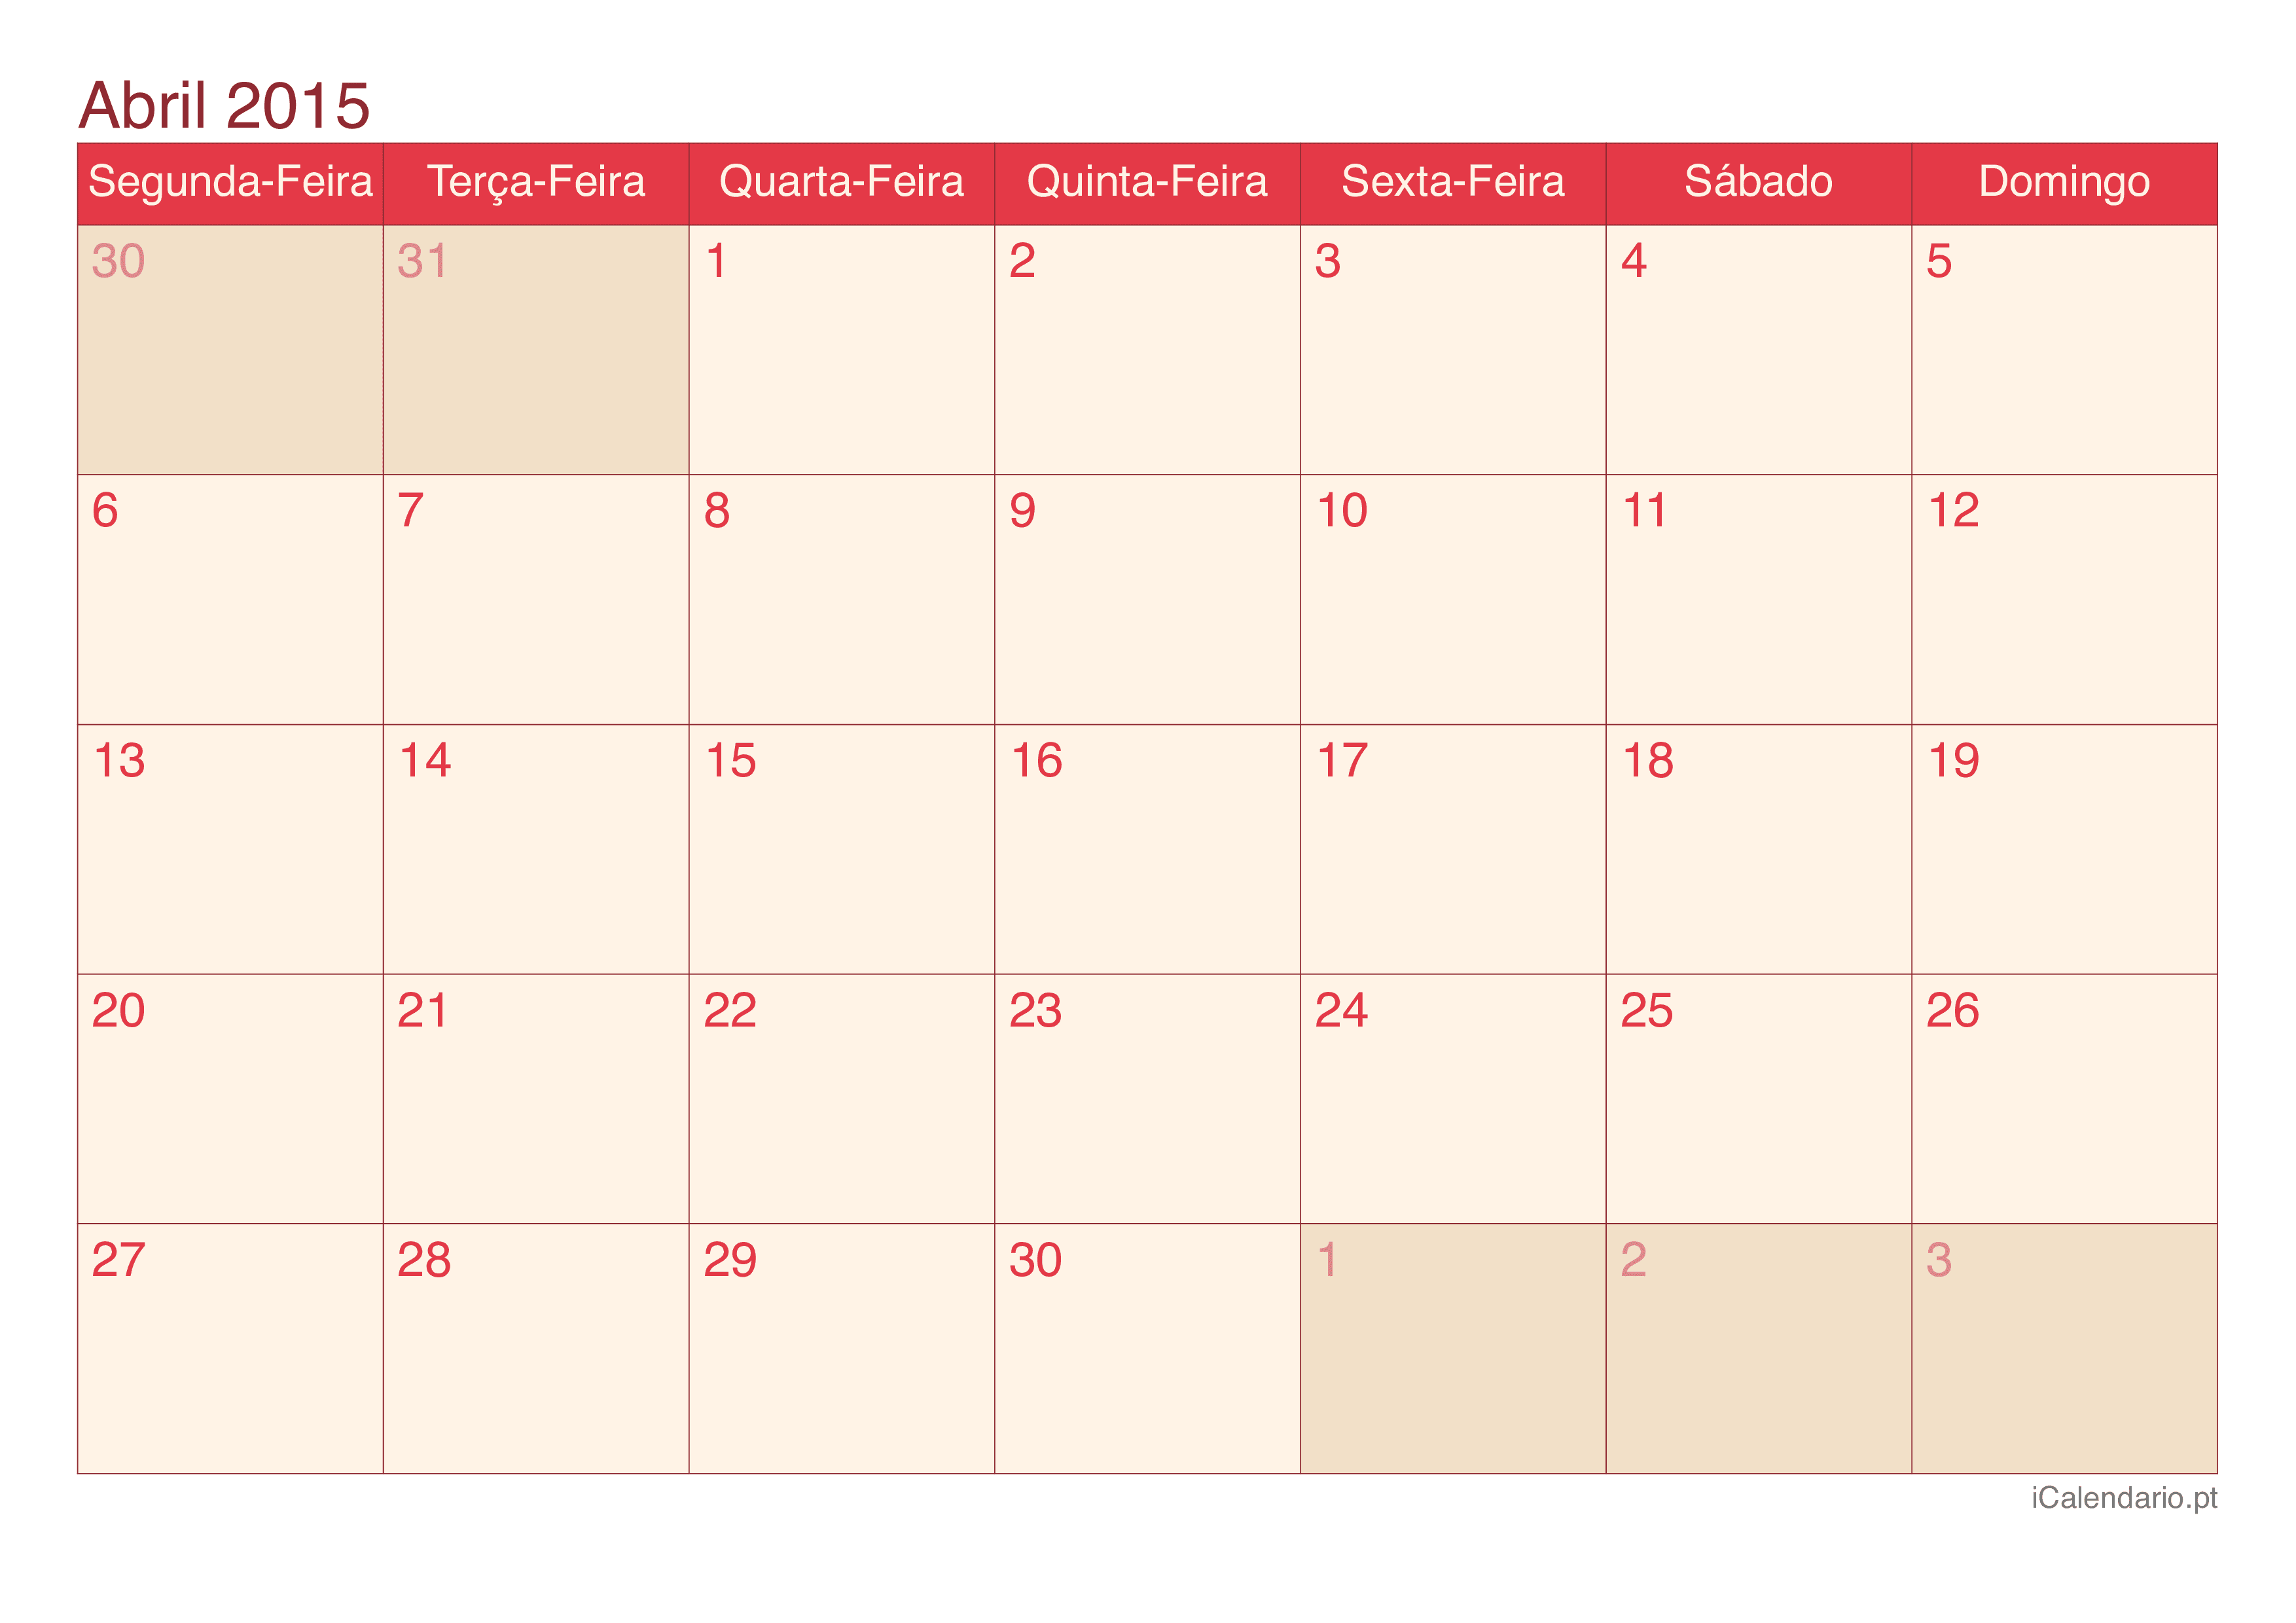 Calendário de abril 2015 - Cherry